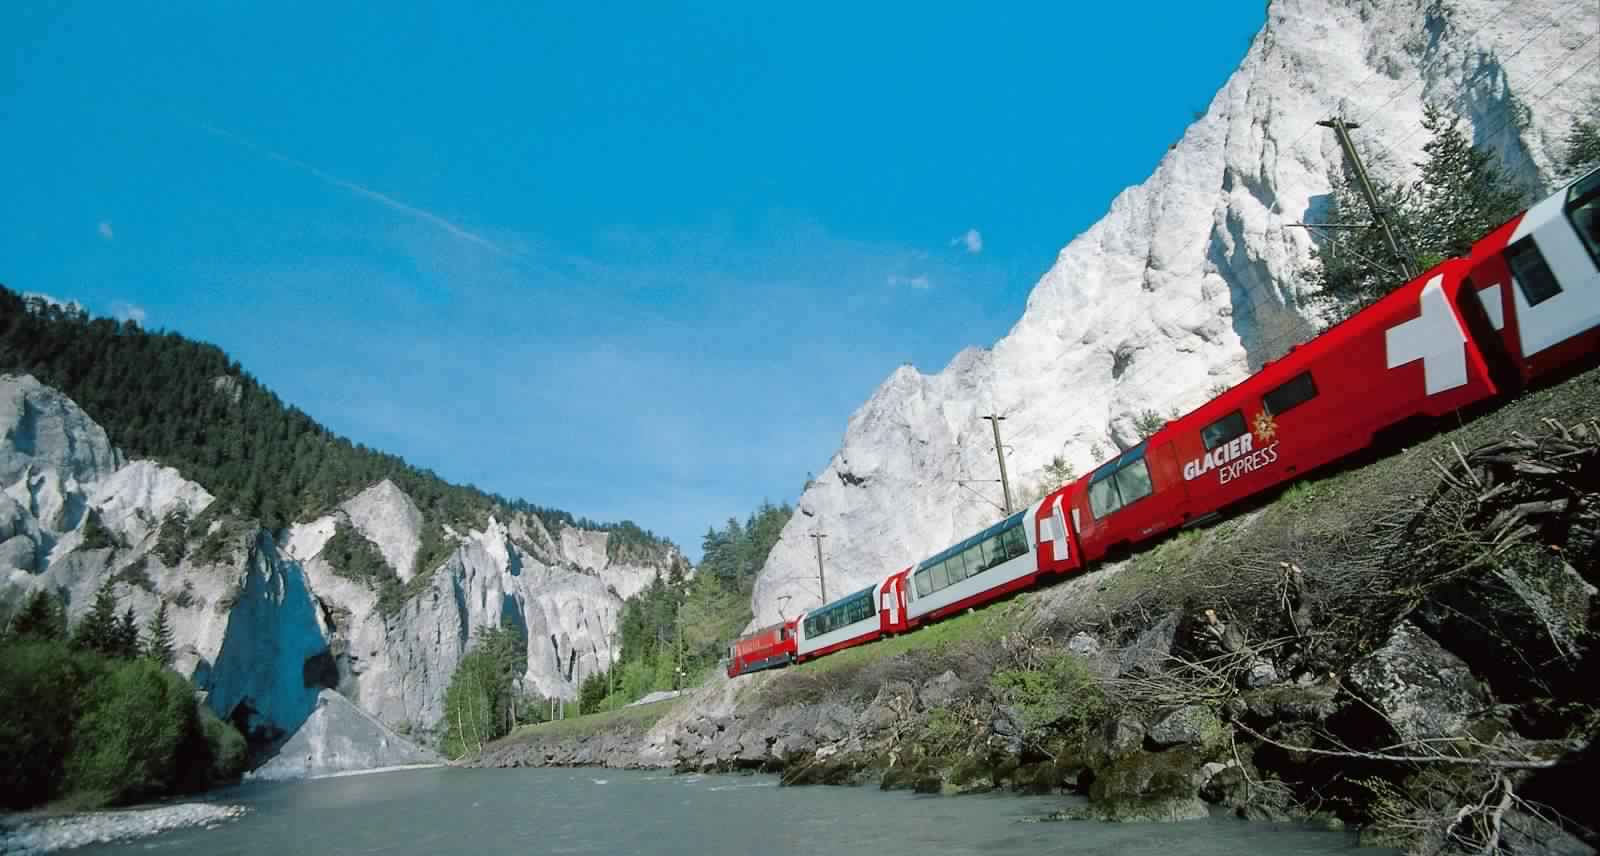 "بالصور" جولة مع قطار جلاسير إكسبريس عبر جبال اﻷلب السويسرية 1